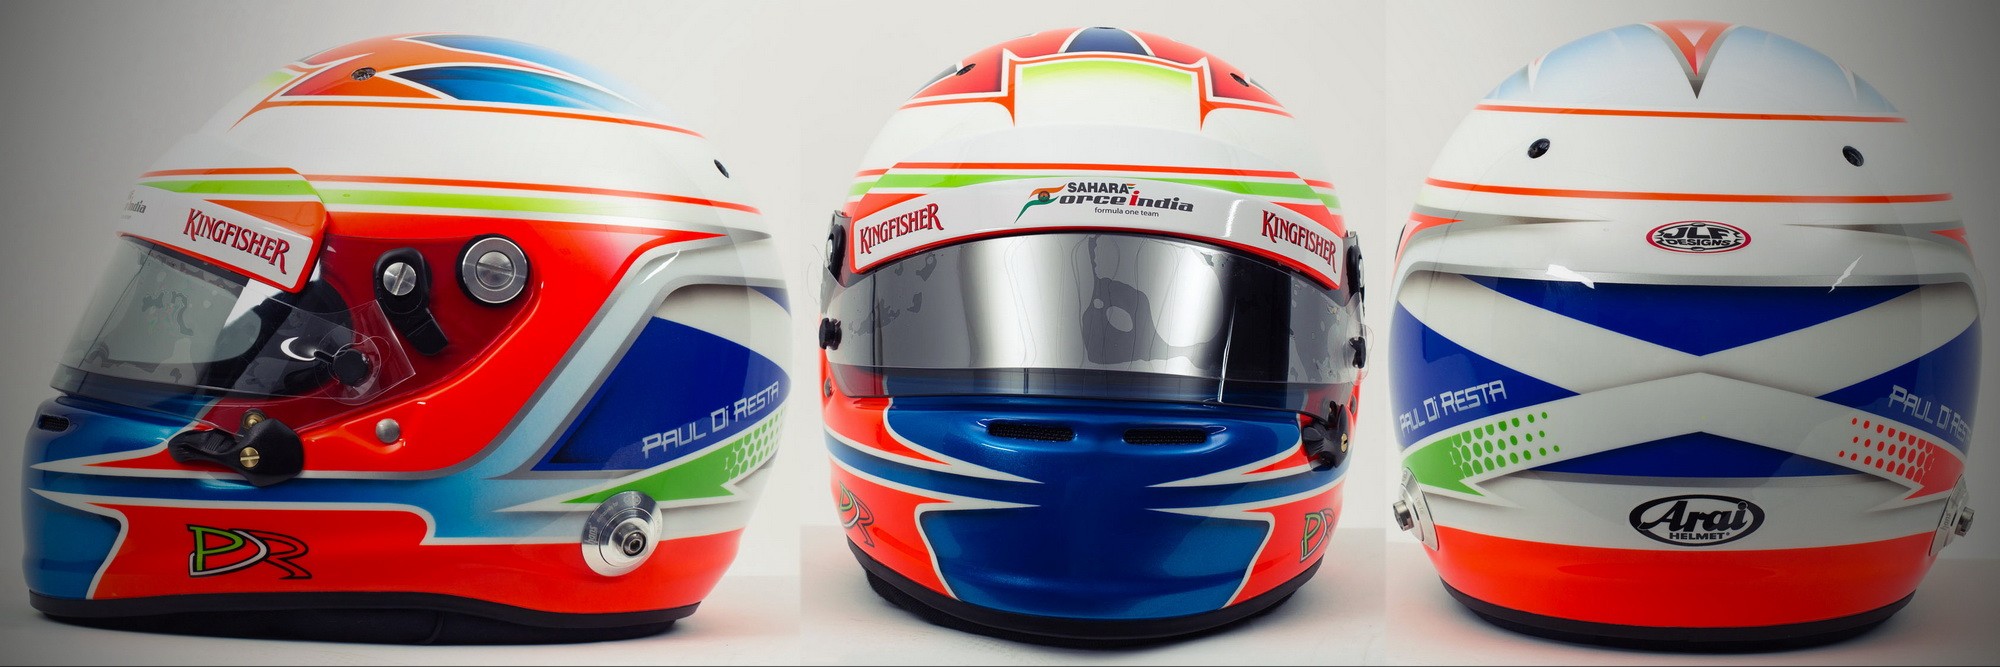 Шлем Пола ди Ресты на сезон 2013 года | 2013 helmet of Paul di Resta